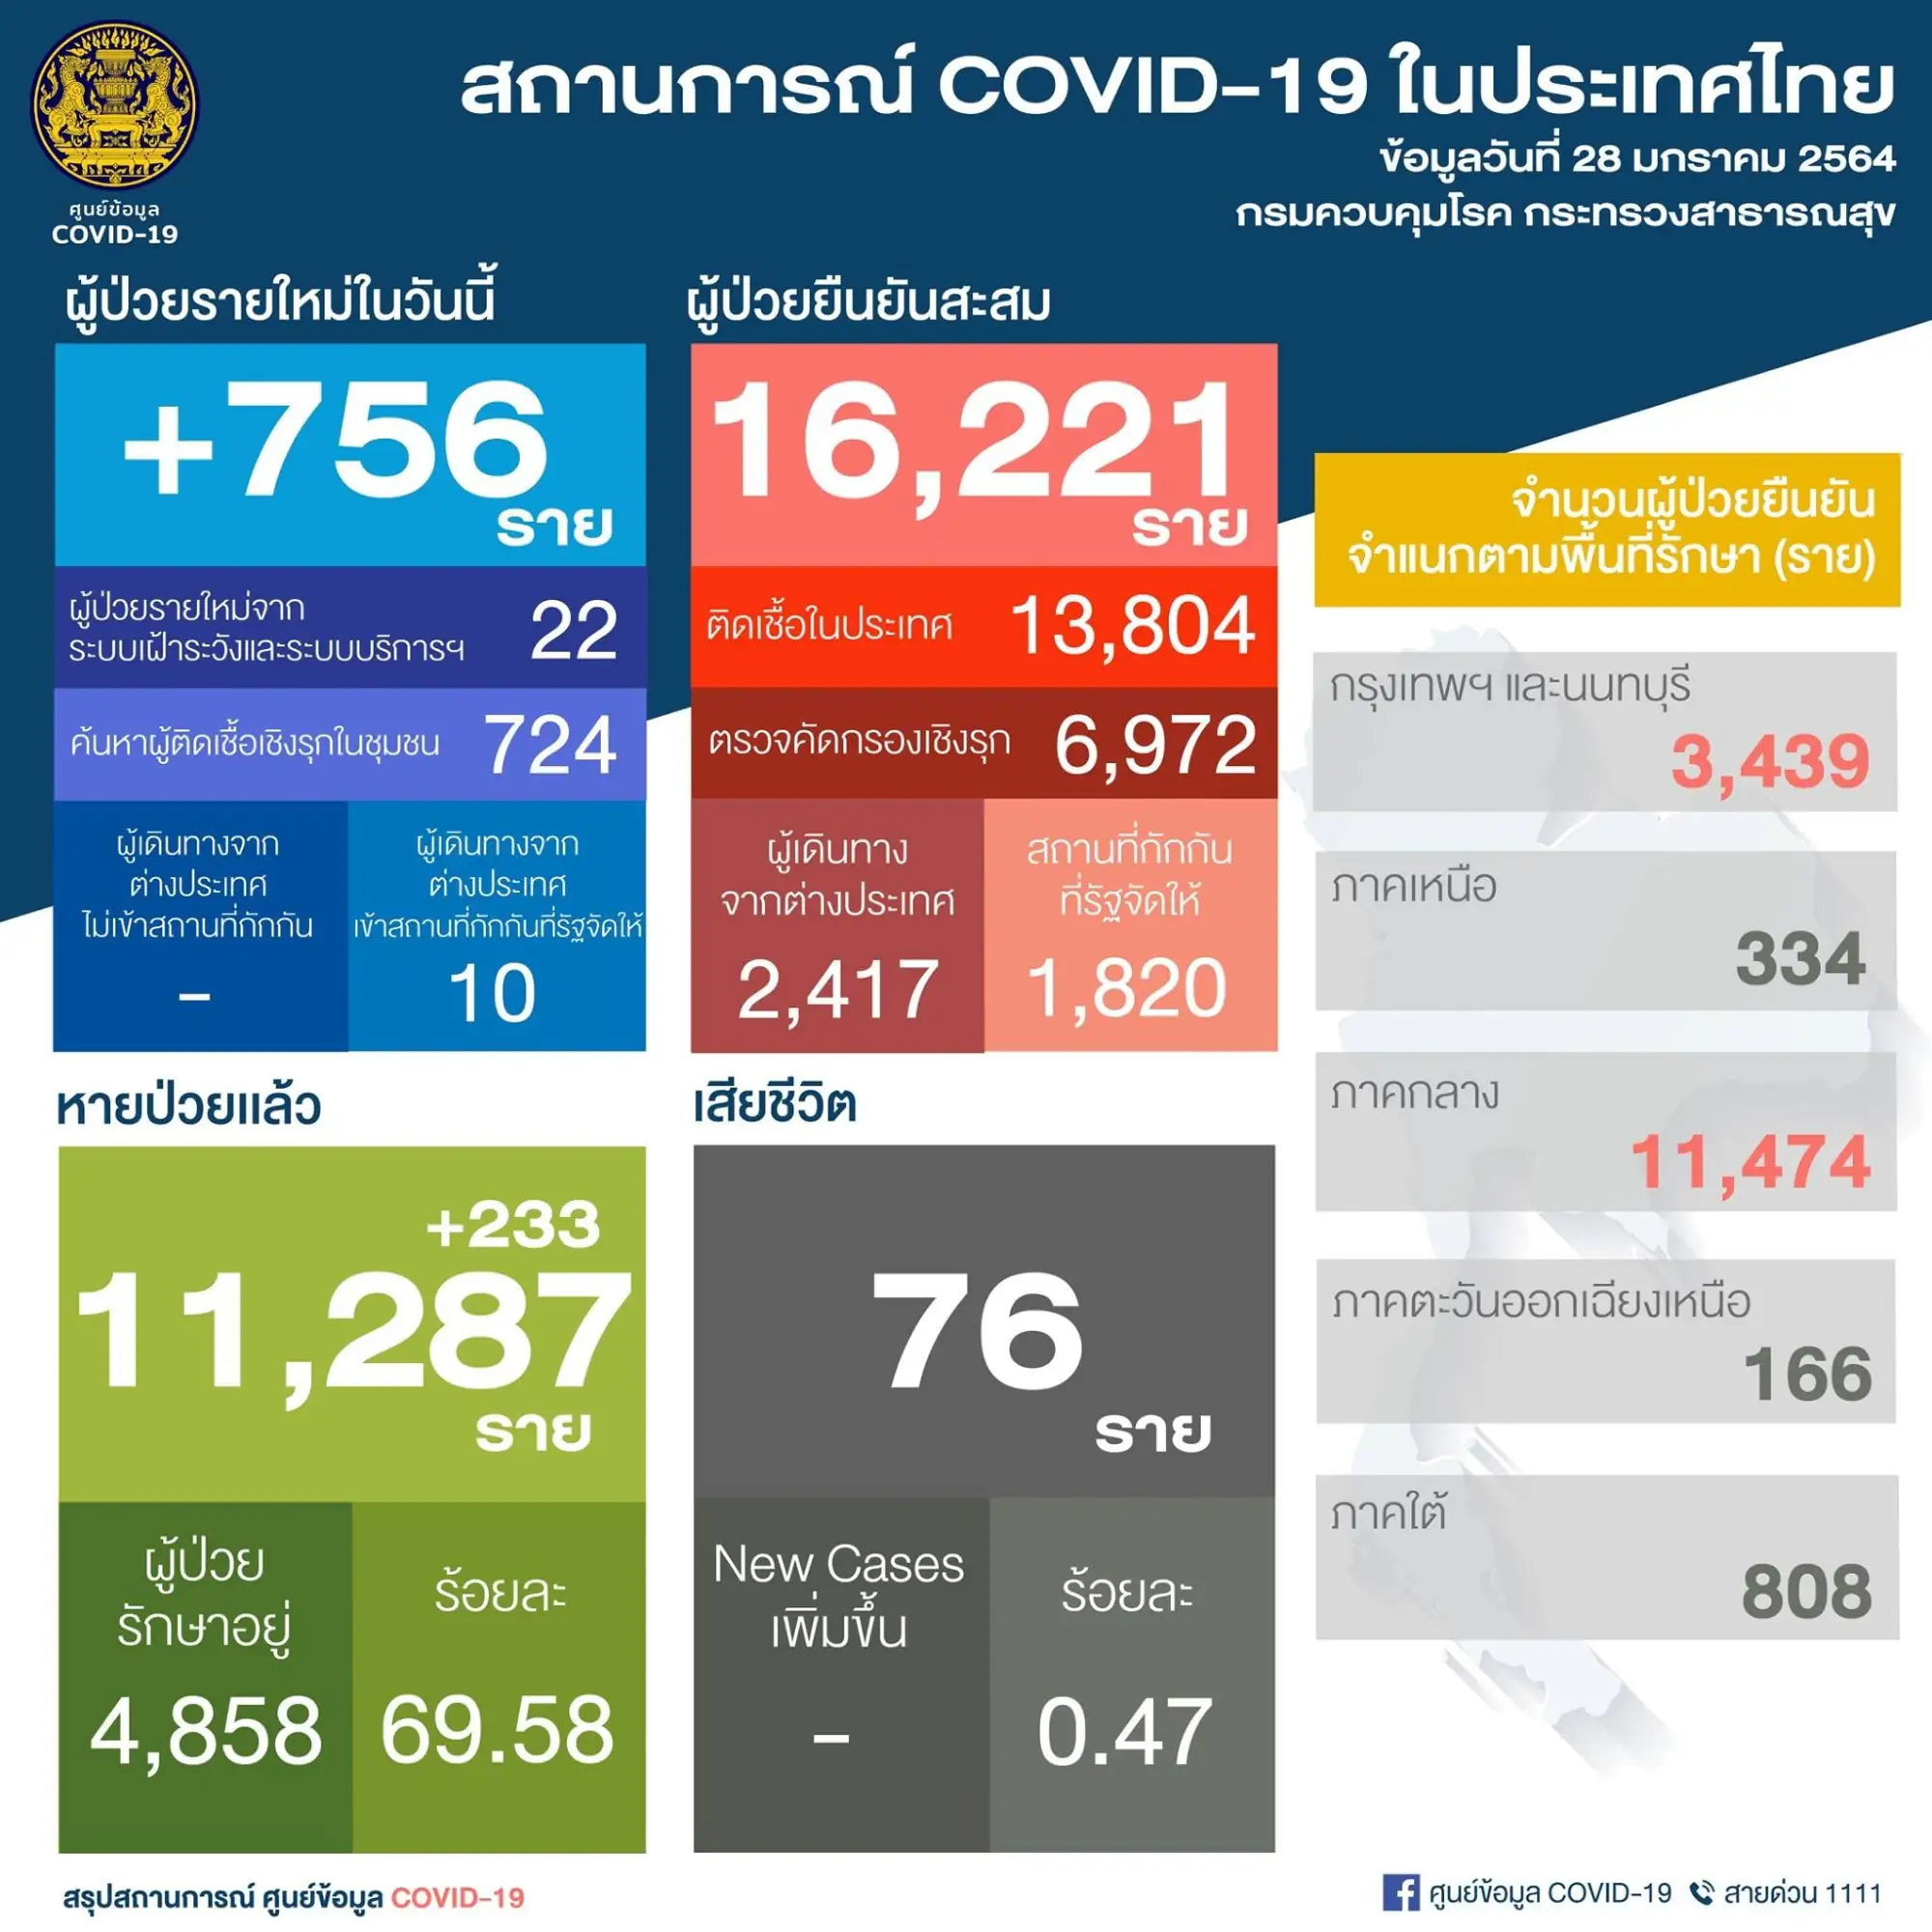 泰国疫情28日新增756例 （图片来源：PR Thai Government 脸书粉丝专页）